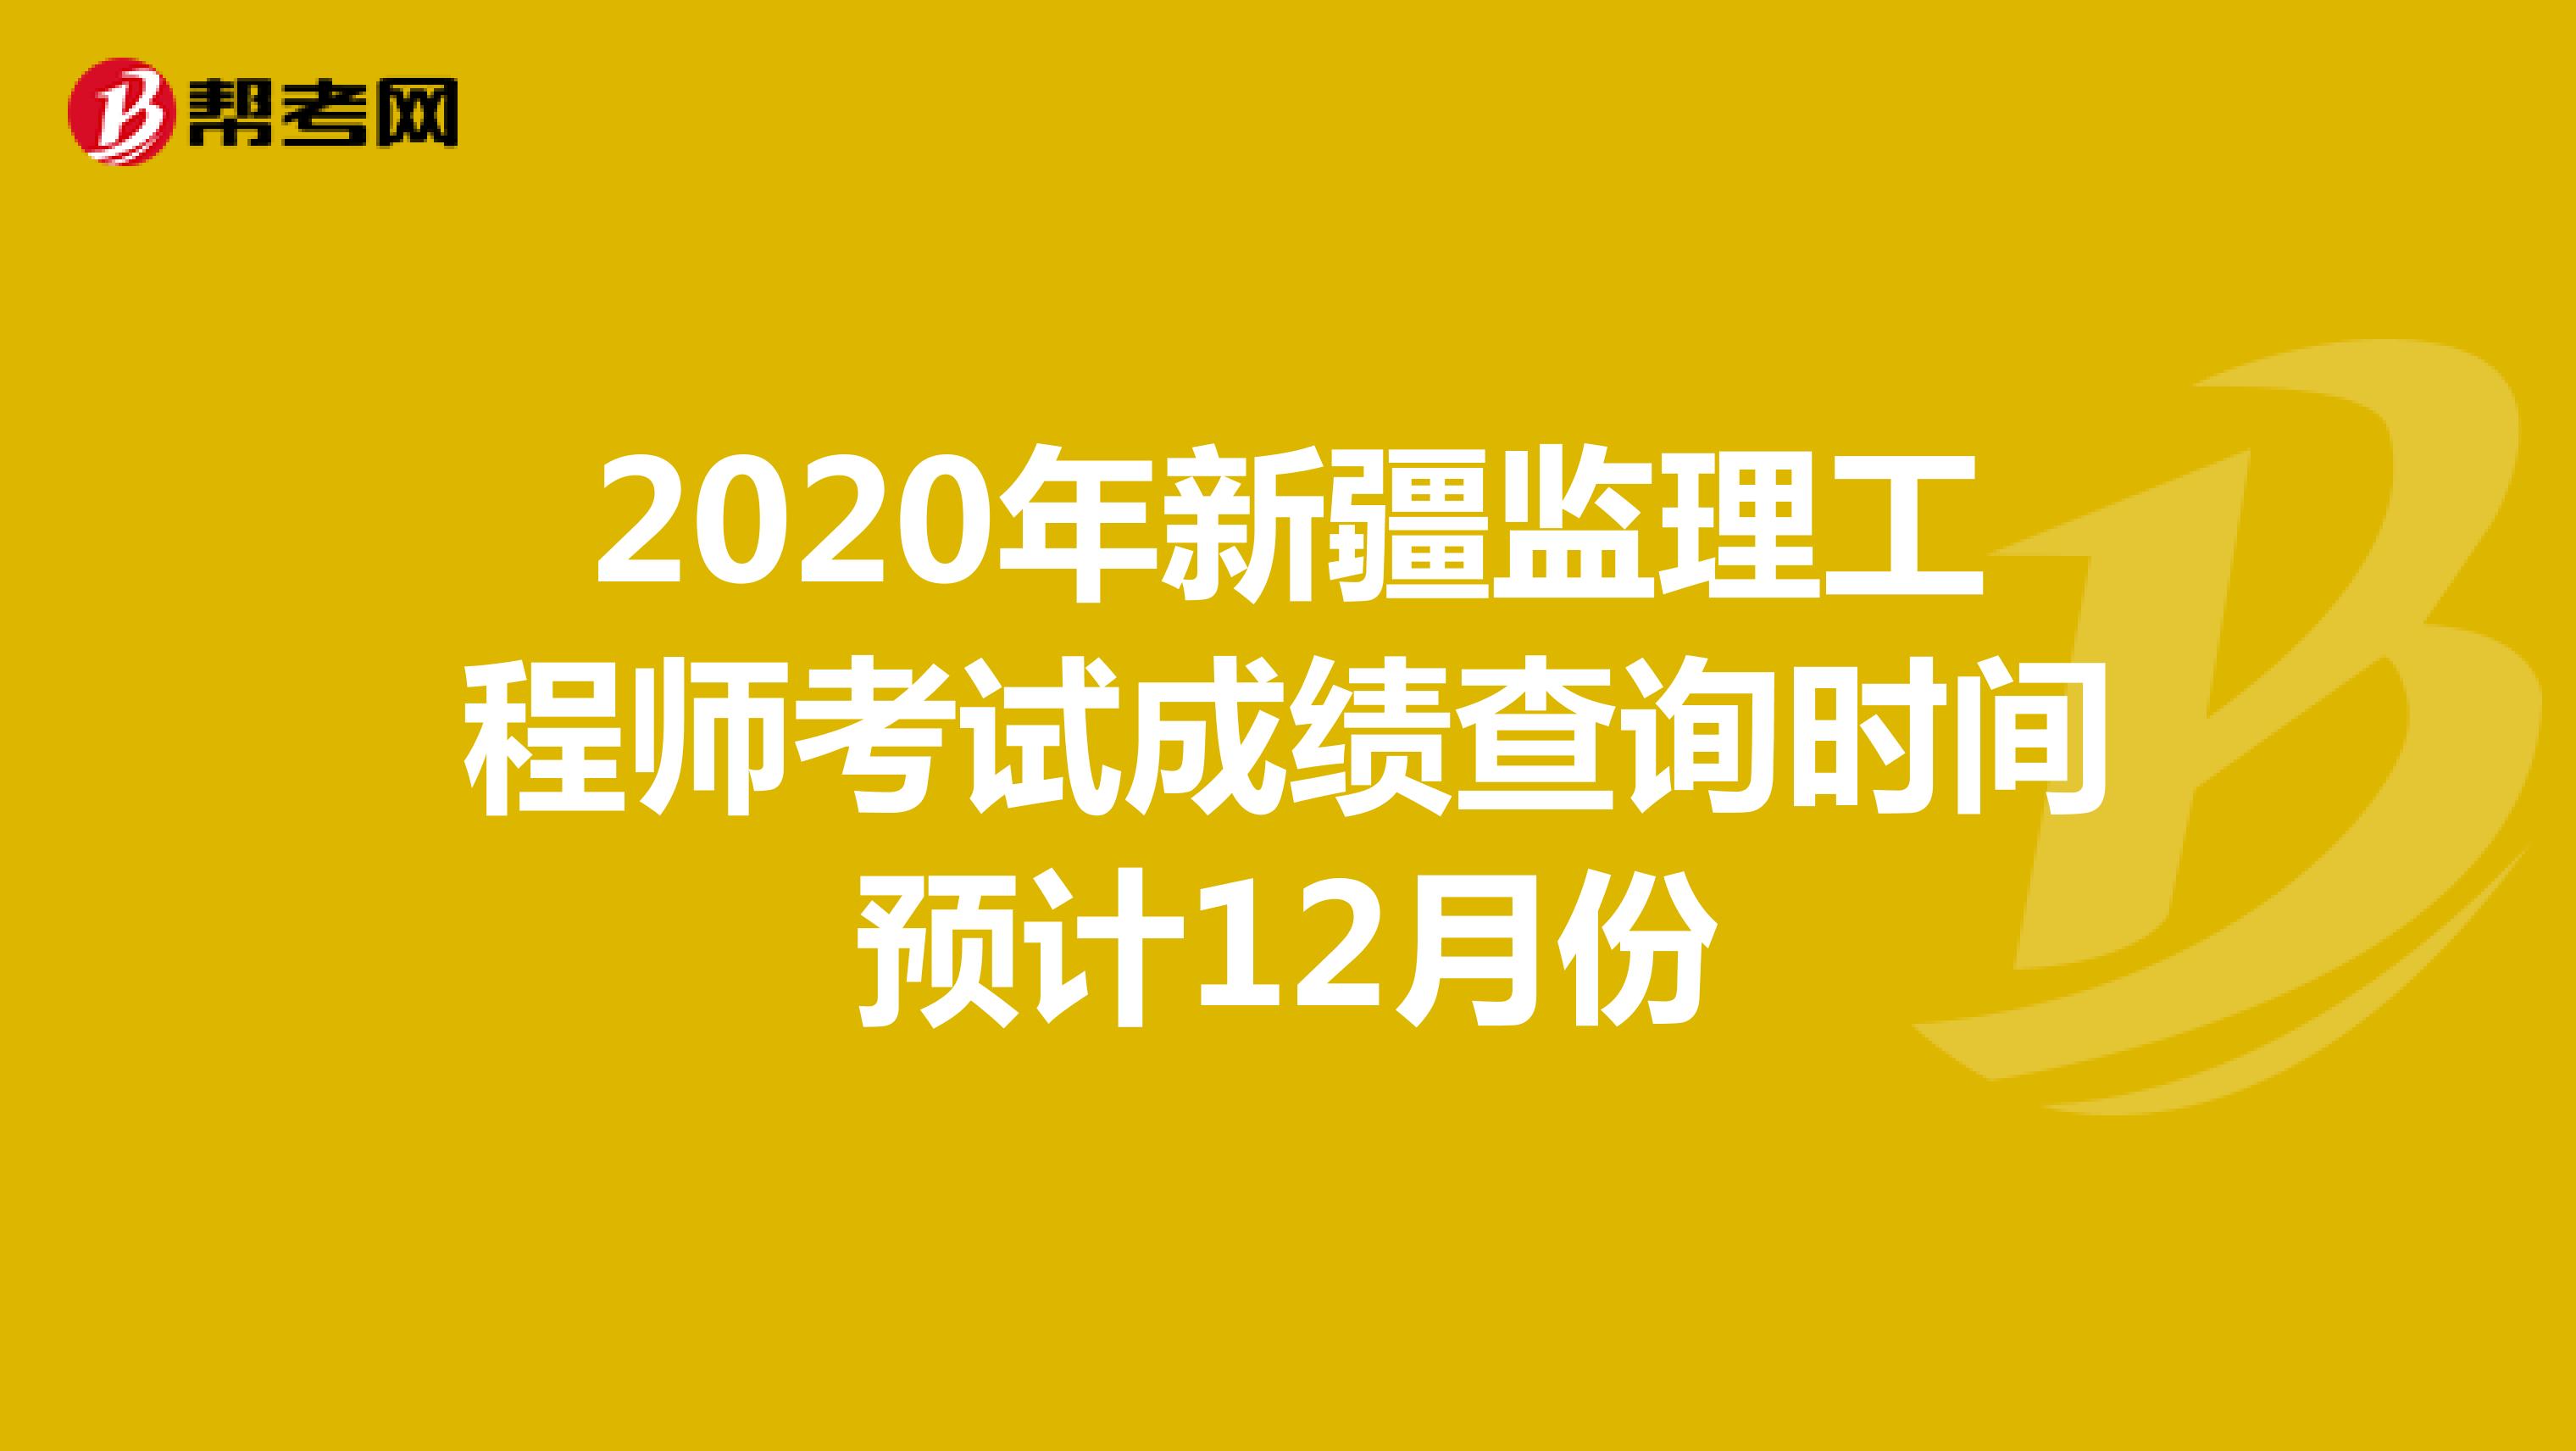 2020年新疆监理工程师考试成绩查询时间预计12月份